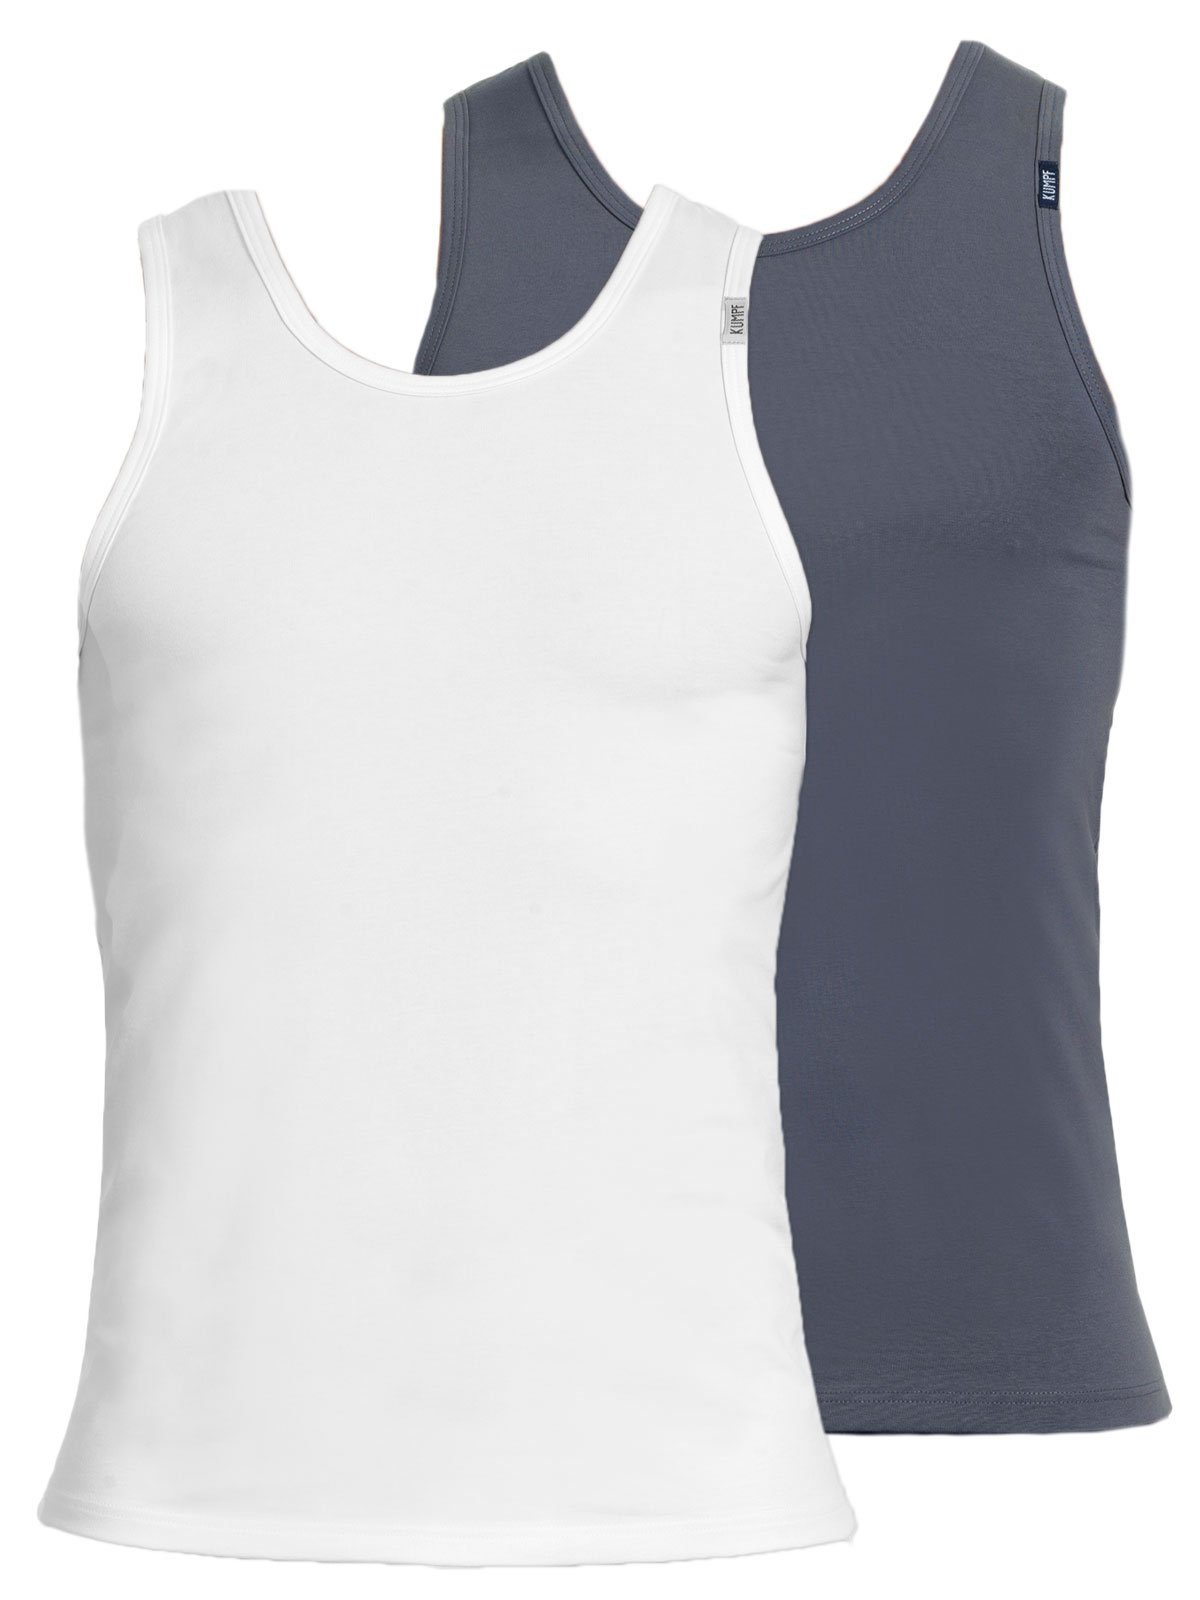 KUMPF Achselhemd 2er Sparpack Herren Unterhemd Bio Cotton (Spar-Set, 2-St) hohe Markenqualität mittelgrau weiss